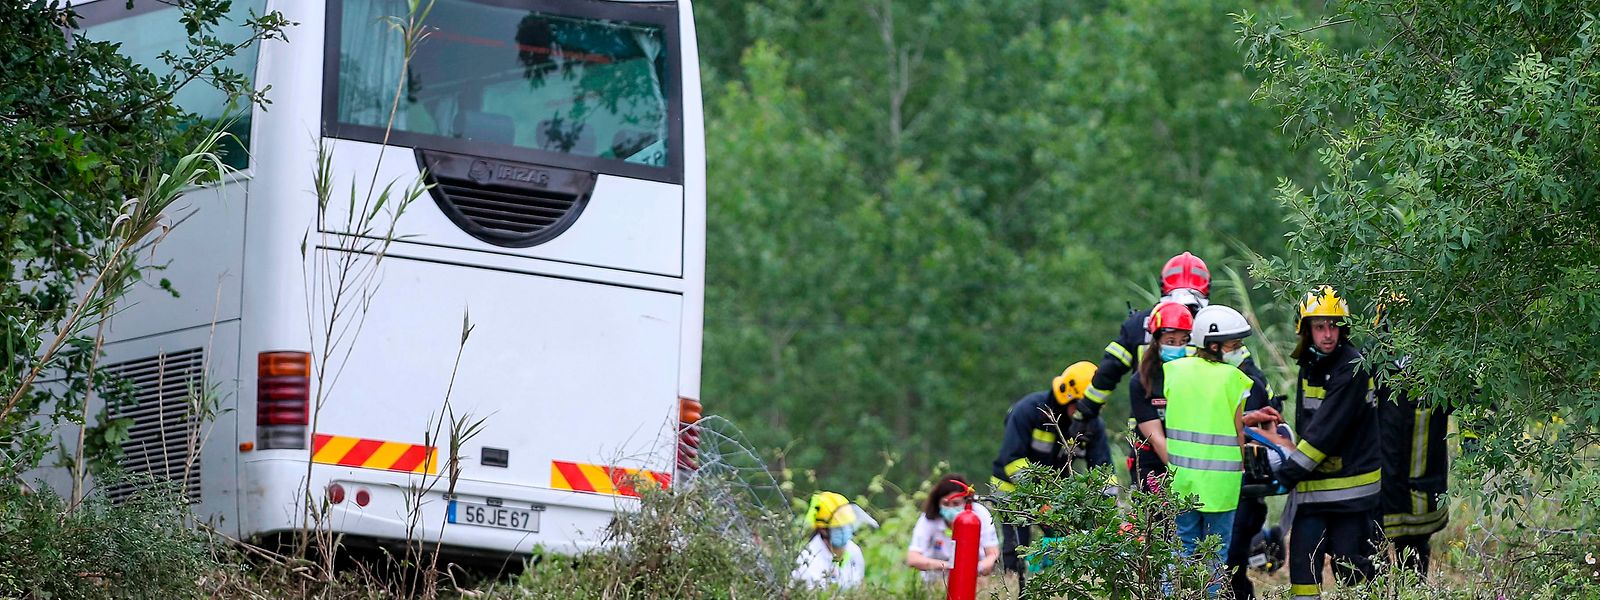 O grave acidente com o autocarro de passageiros aconteceu esta manhã na A1, na zona da Mealhada.